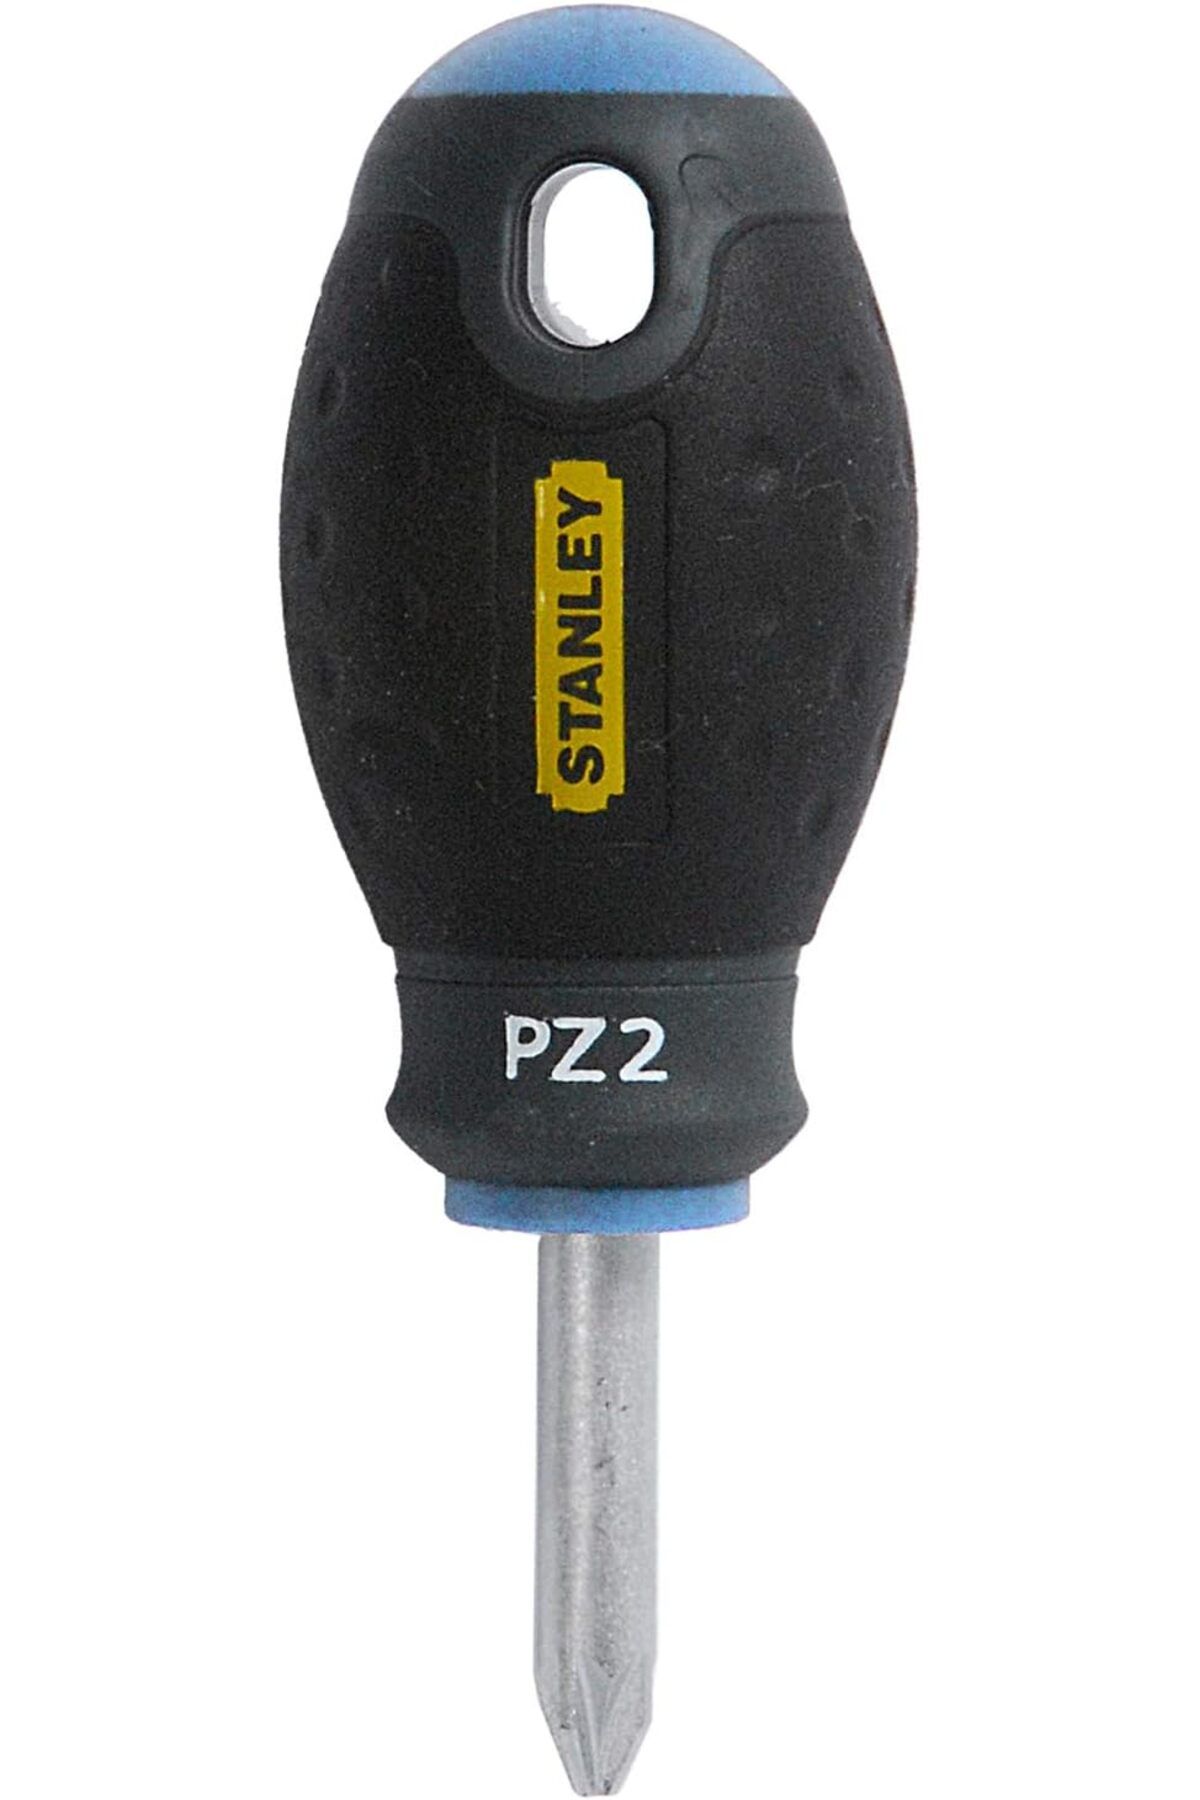 Genel Markalar tornavida Pozidriv PZ2 (30 mm bıçak uzunluğu, krom vanadyum çelik, ergonomik yumuşak tutuş) 0-